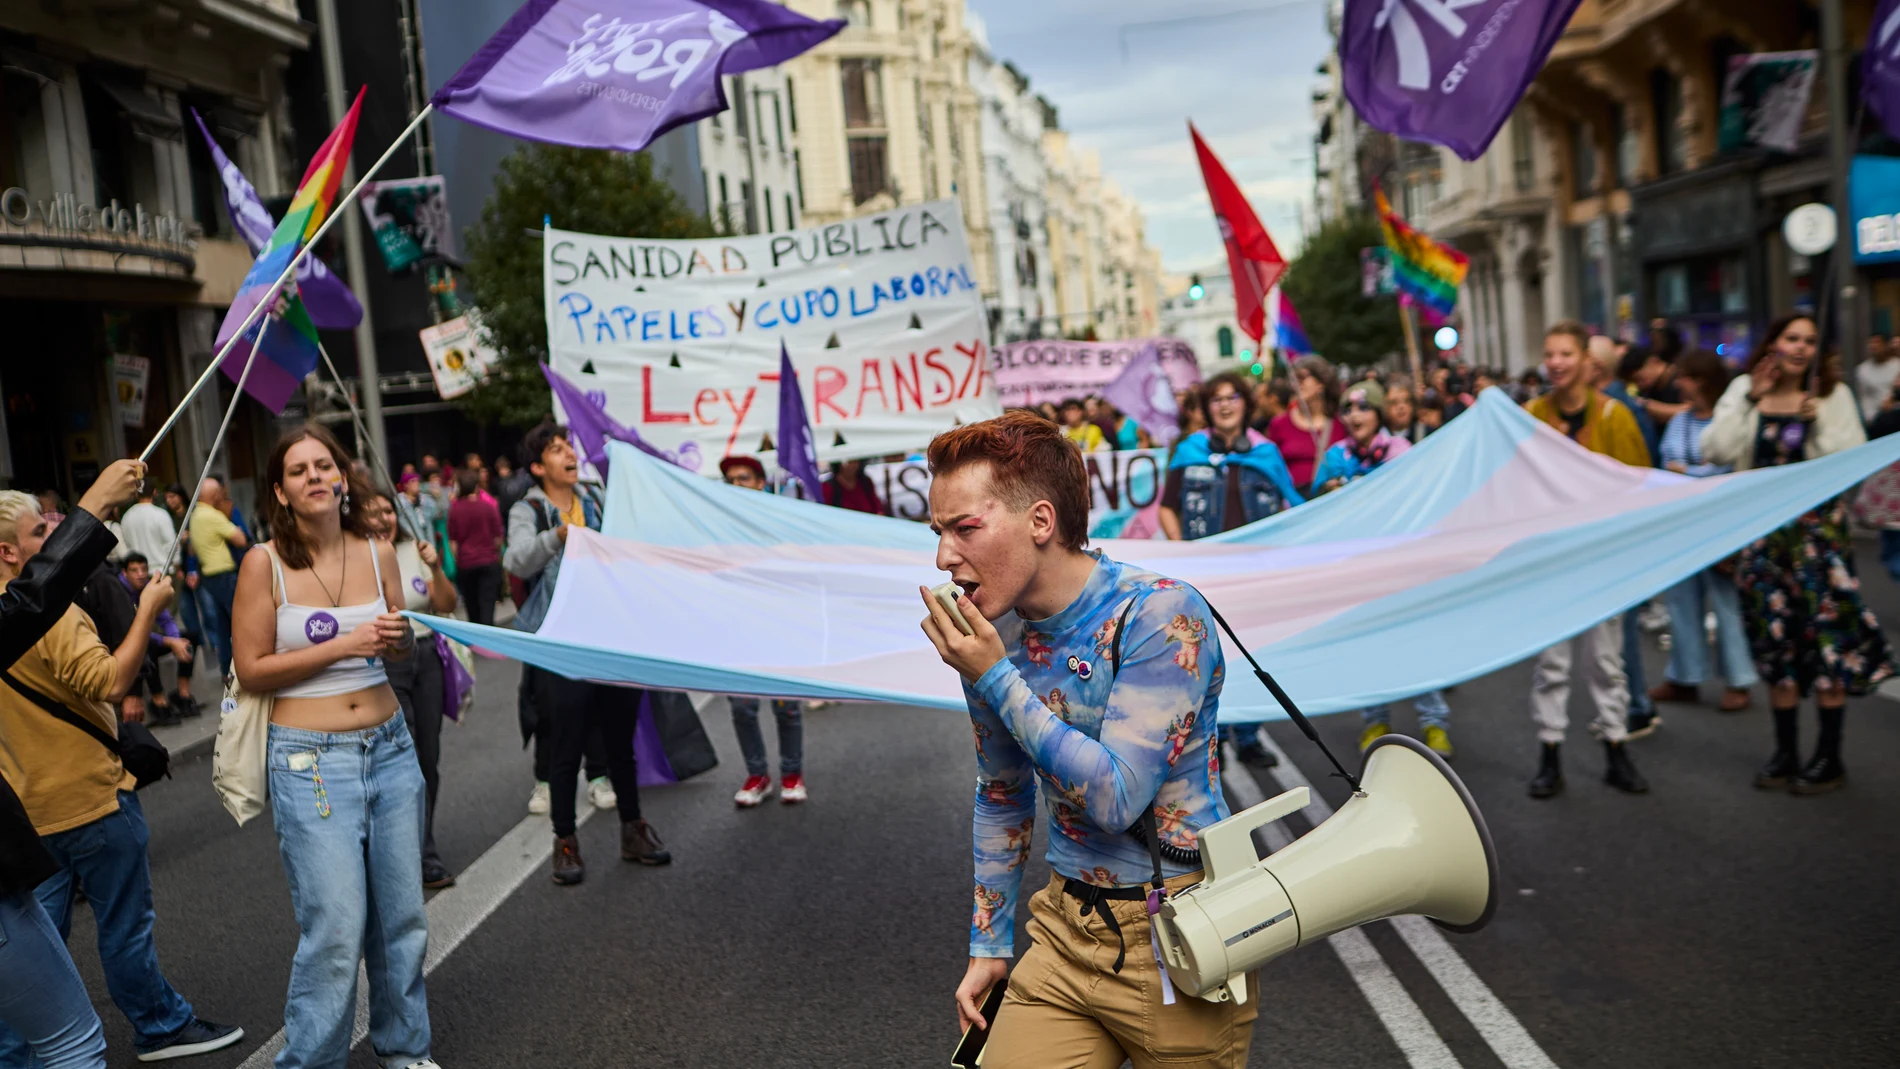 Un momento de la manifestación que se ha celebrado en Madrid, convocada por la Federación Plataforma Trans, a favor de la Ley Trans y para exigir su tramitación.